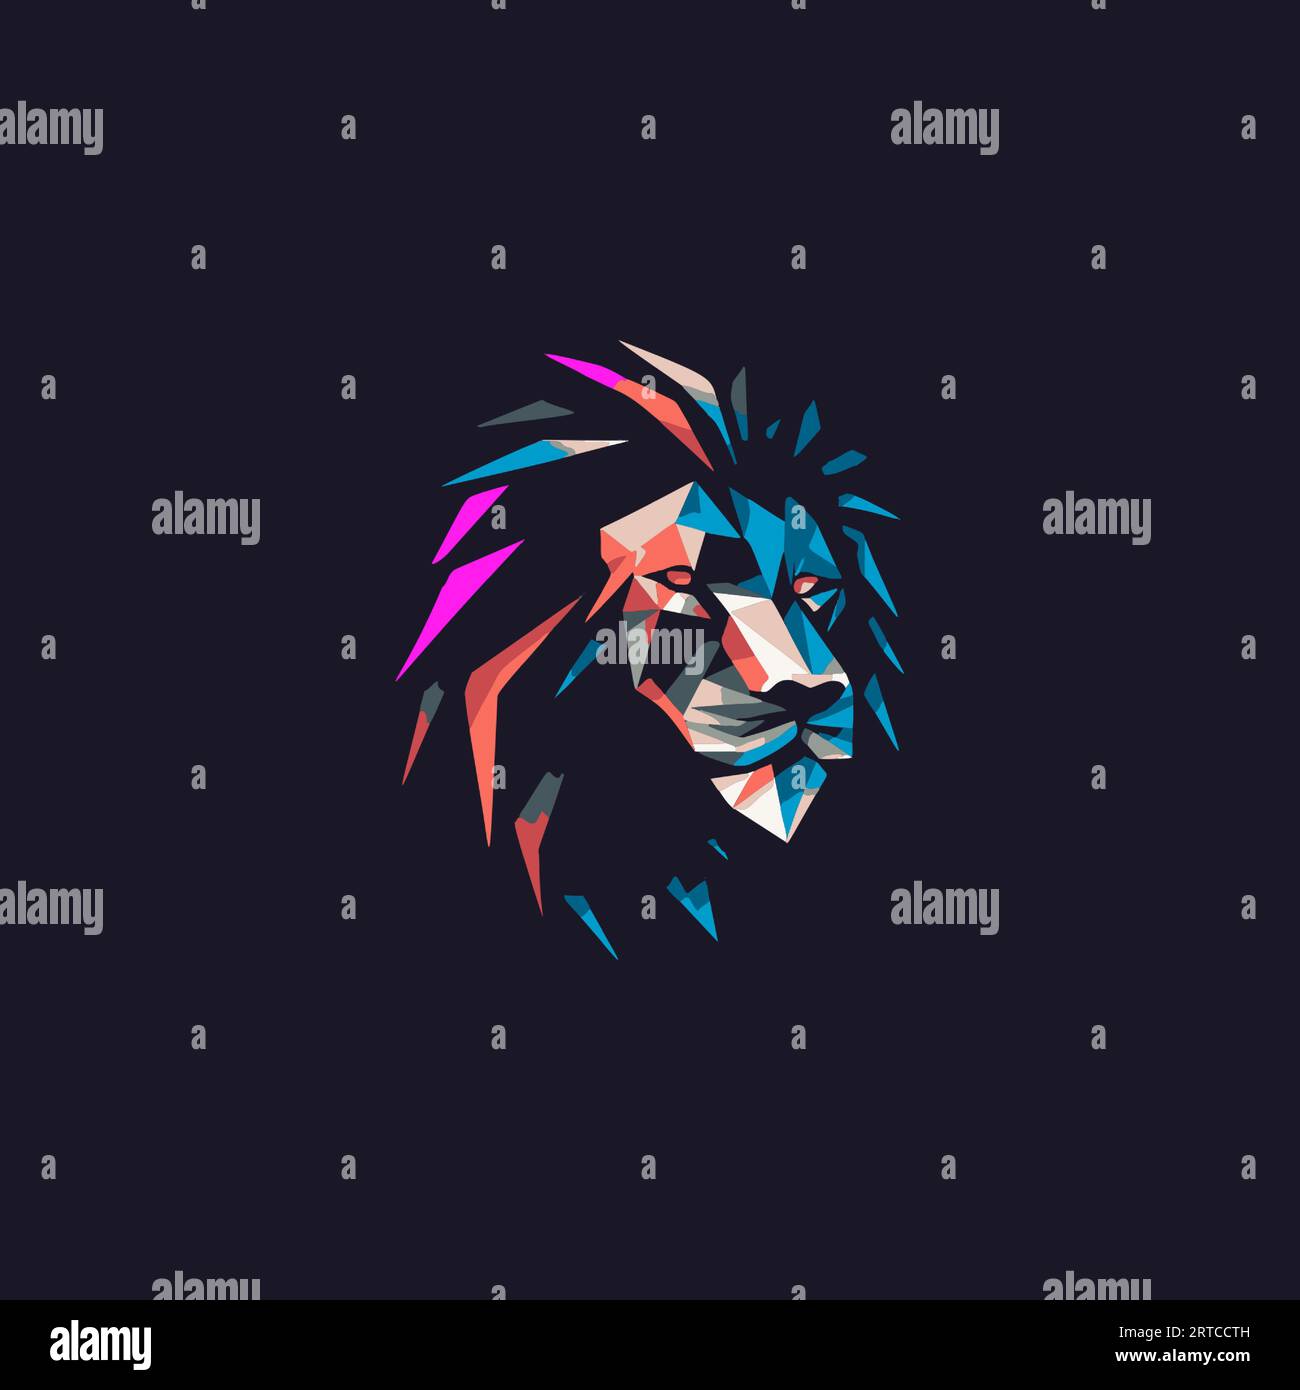 Logo de mascotte de tête de lion polygonal coloré, portrait géométrique abstrait de roi animal dans un style futuriste moderne avec des couleurs lumineuses. Marque polyvalente Illustration de Vecteur